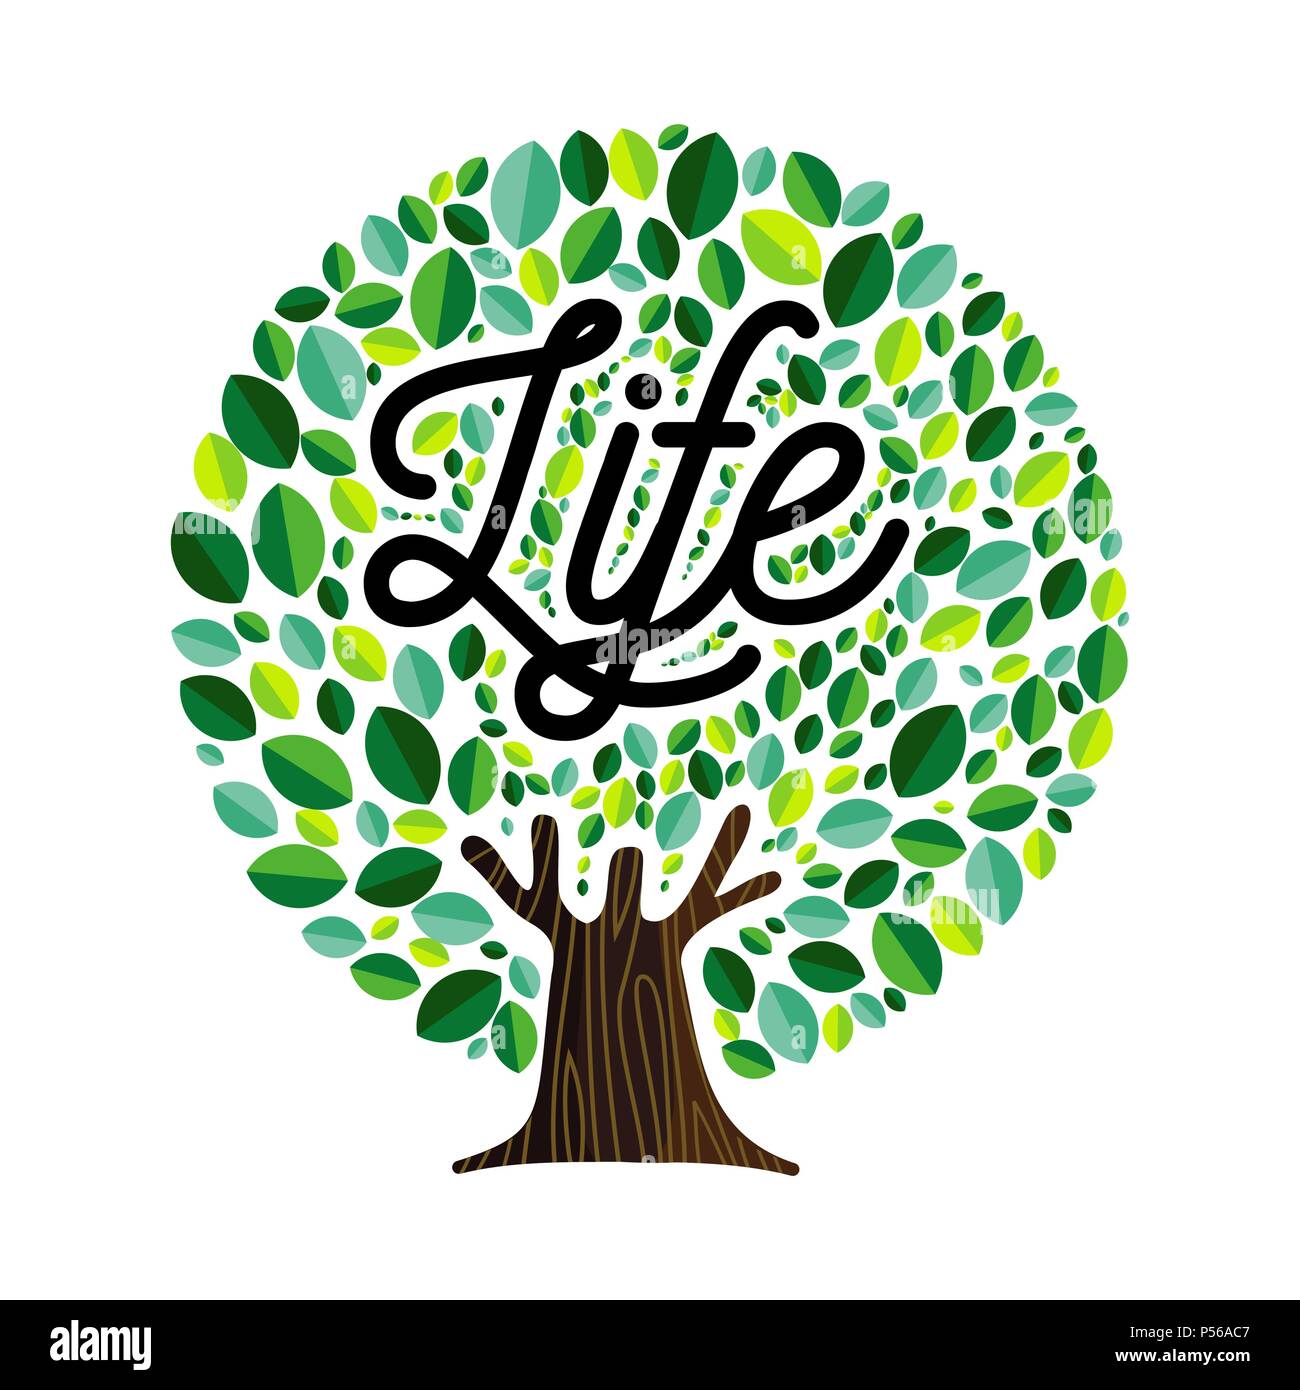 Life tree Abbildung: Konzept, grüne Blätter mit Text zitieren für konzeptionelle Gestaltung. EPS 10 Vektor. Stock Vektor